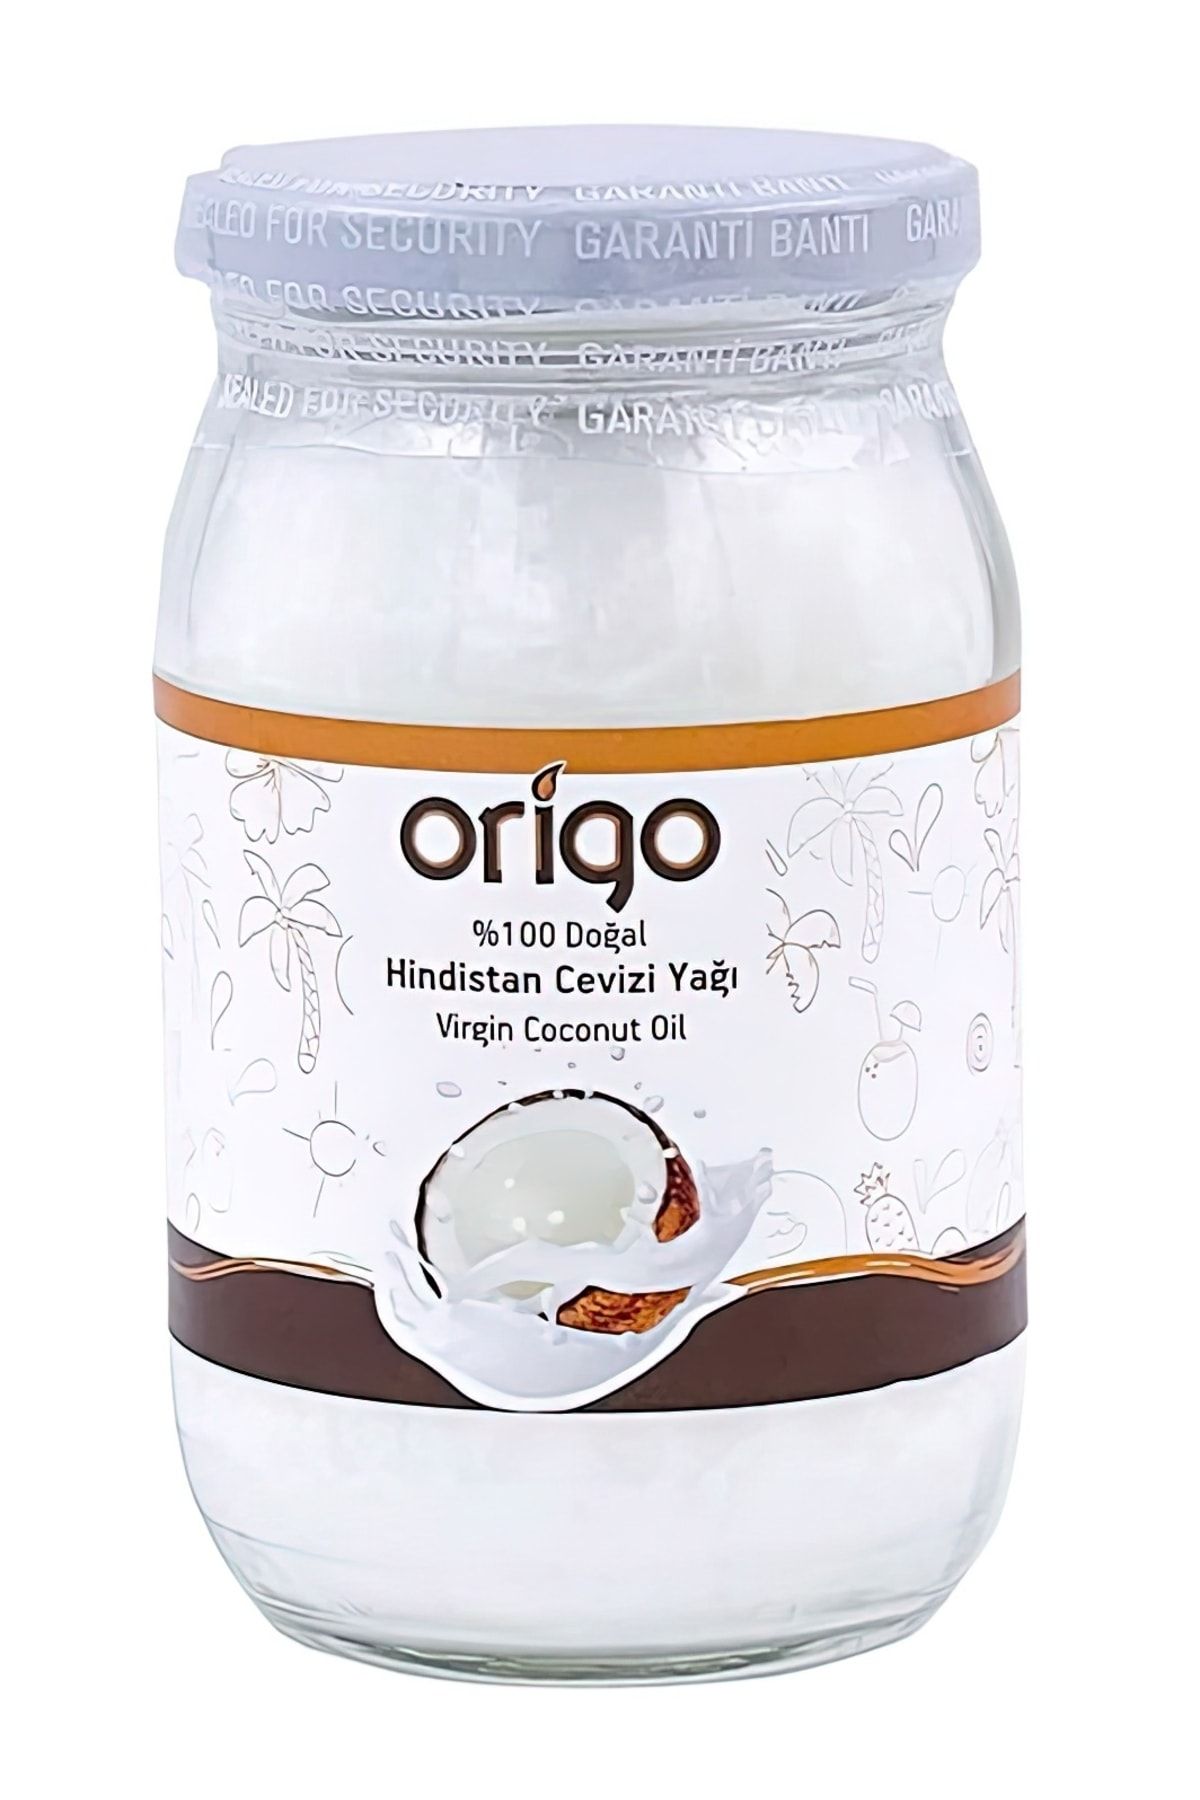 Origo Hindistan Cevizi Yağı 330 ml Soğuk Sıkım (FOOD GRADE) Cam Kavanoz || Sertifikalı